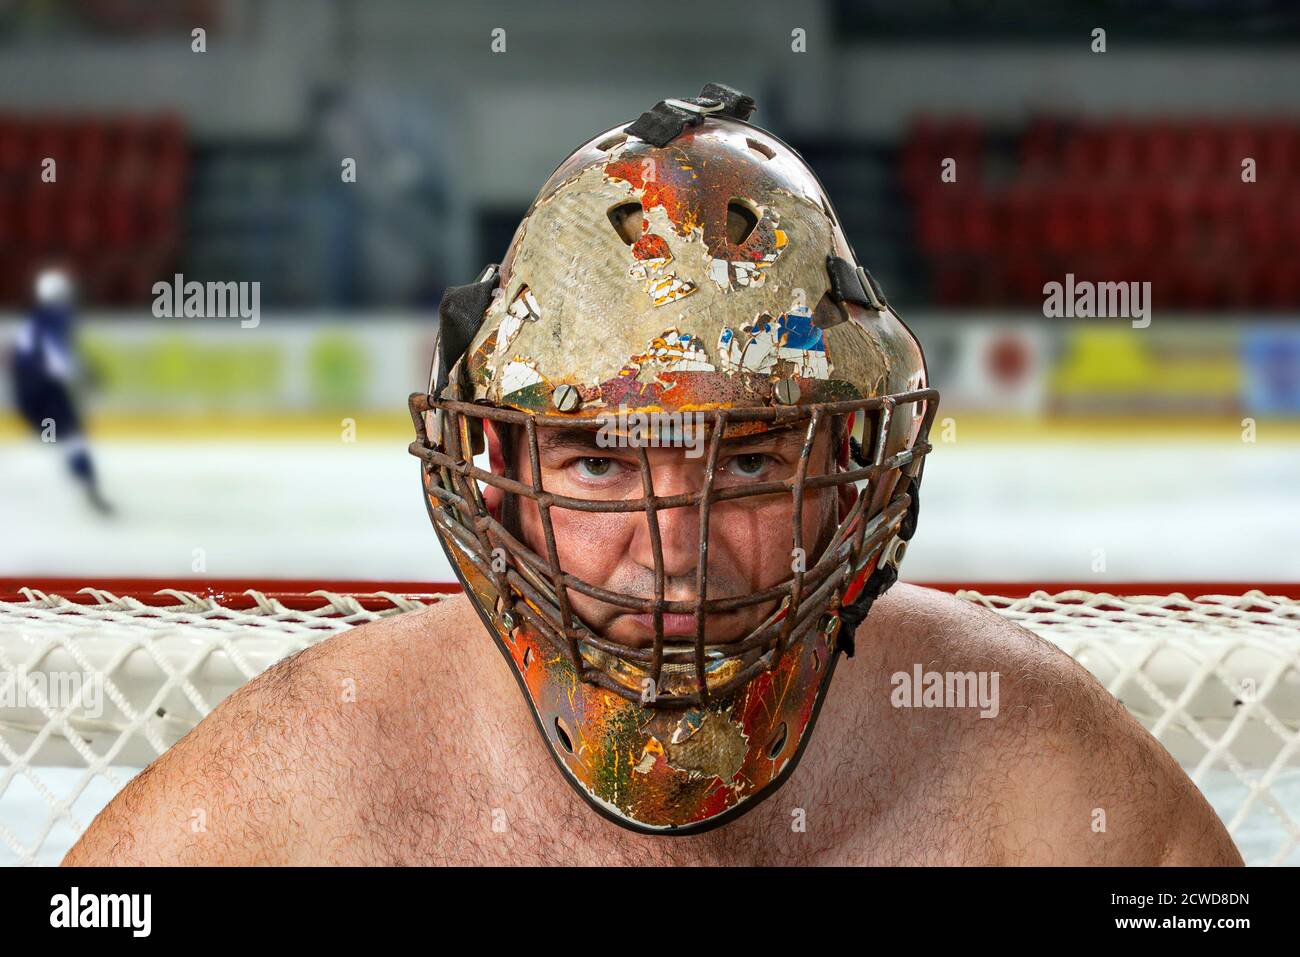 Hockey Torwart in der Maske. Torwart in einer alten Hockey-Maske Stockfoto